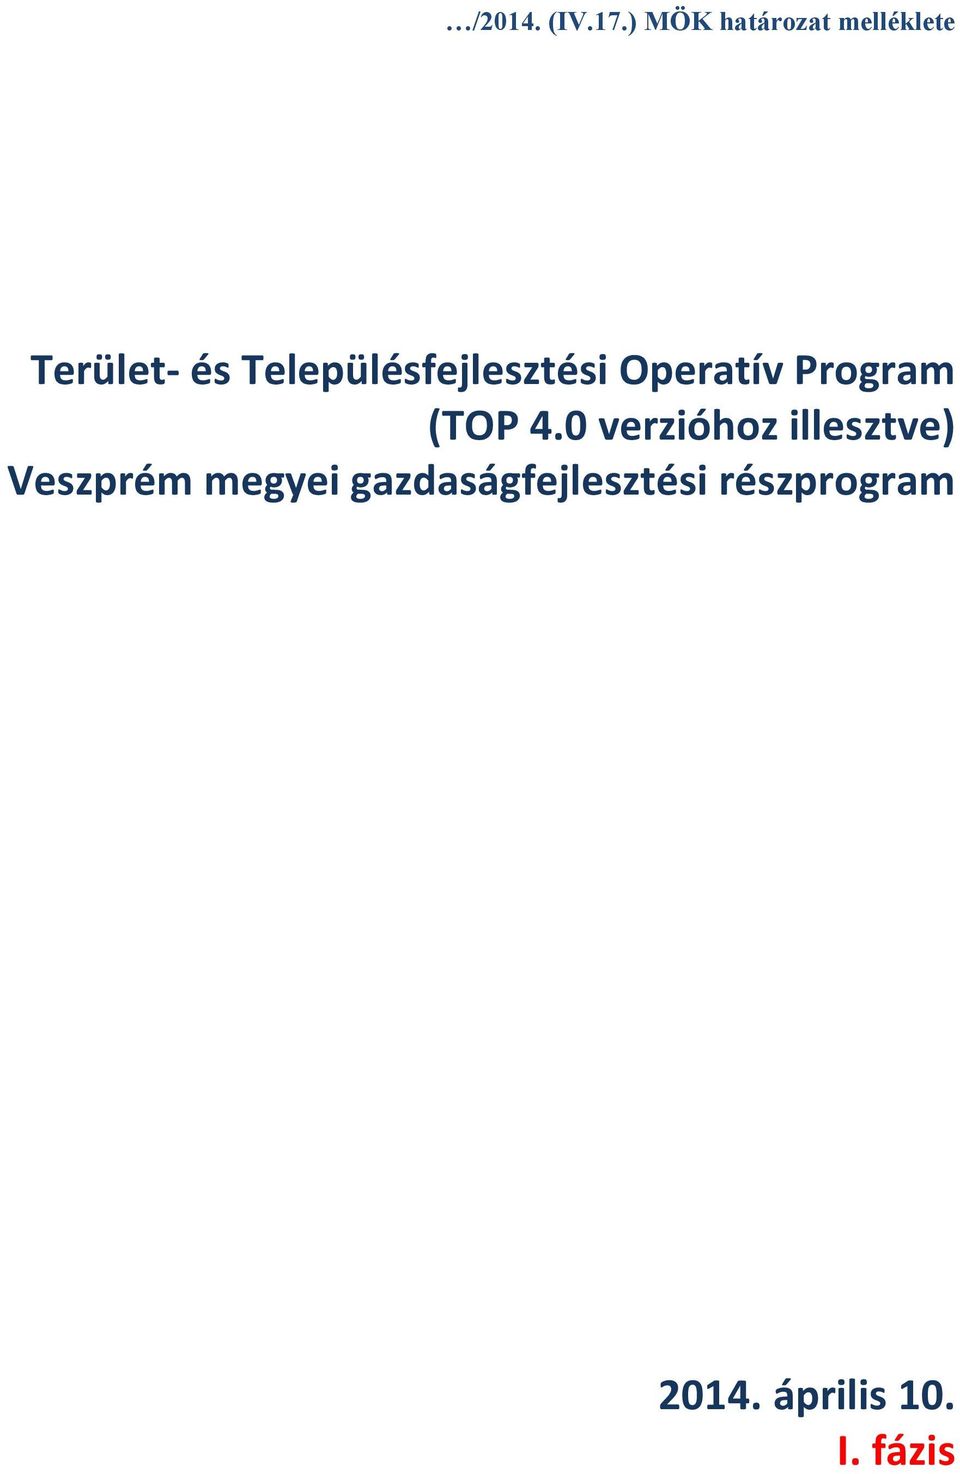 Településfejlesztési Operatív Program (TOP 4.